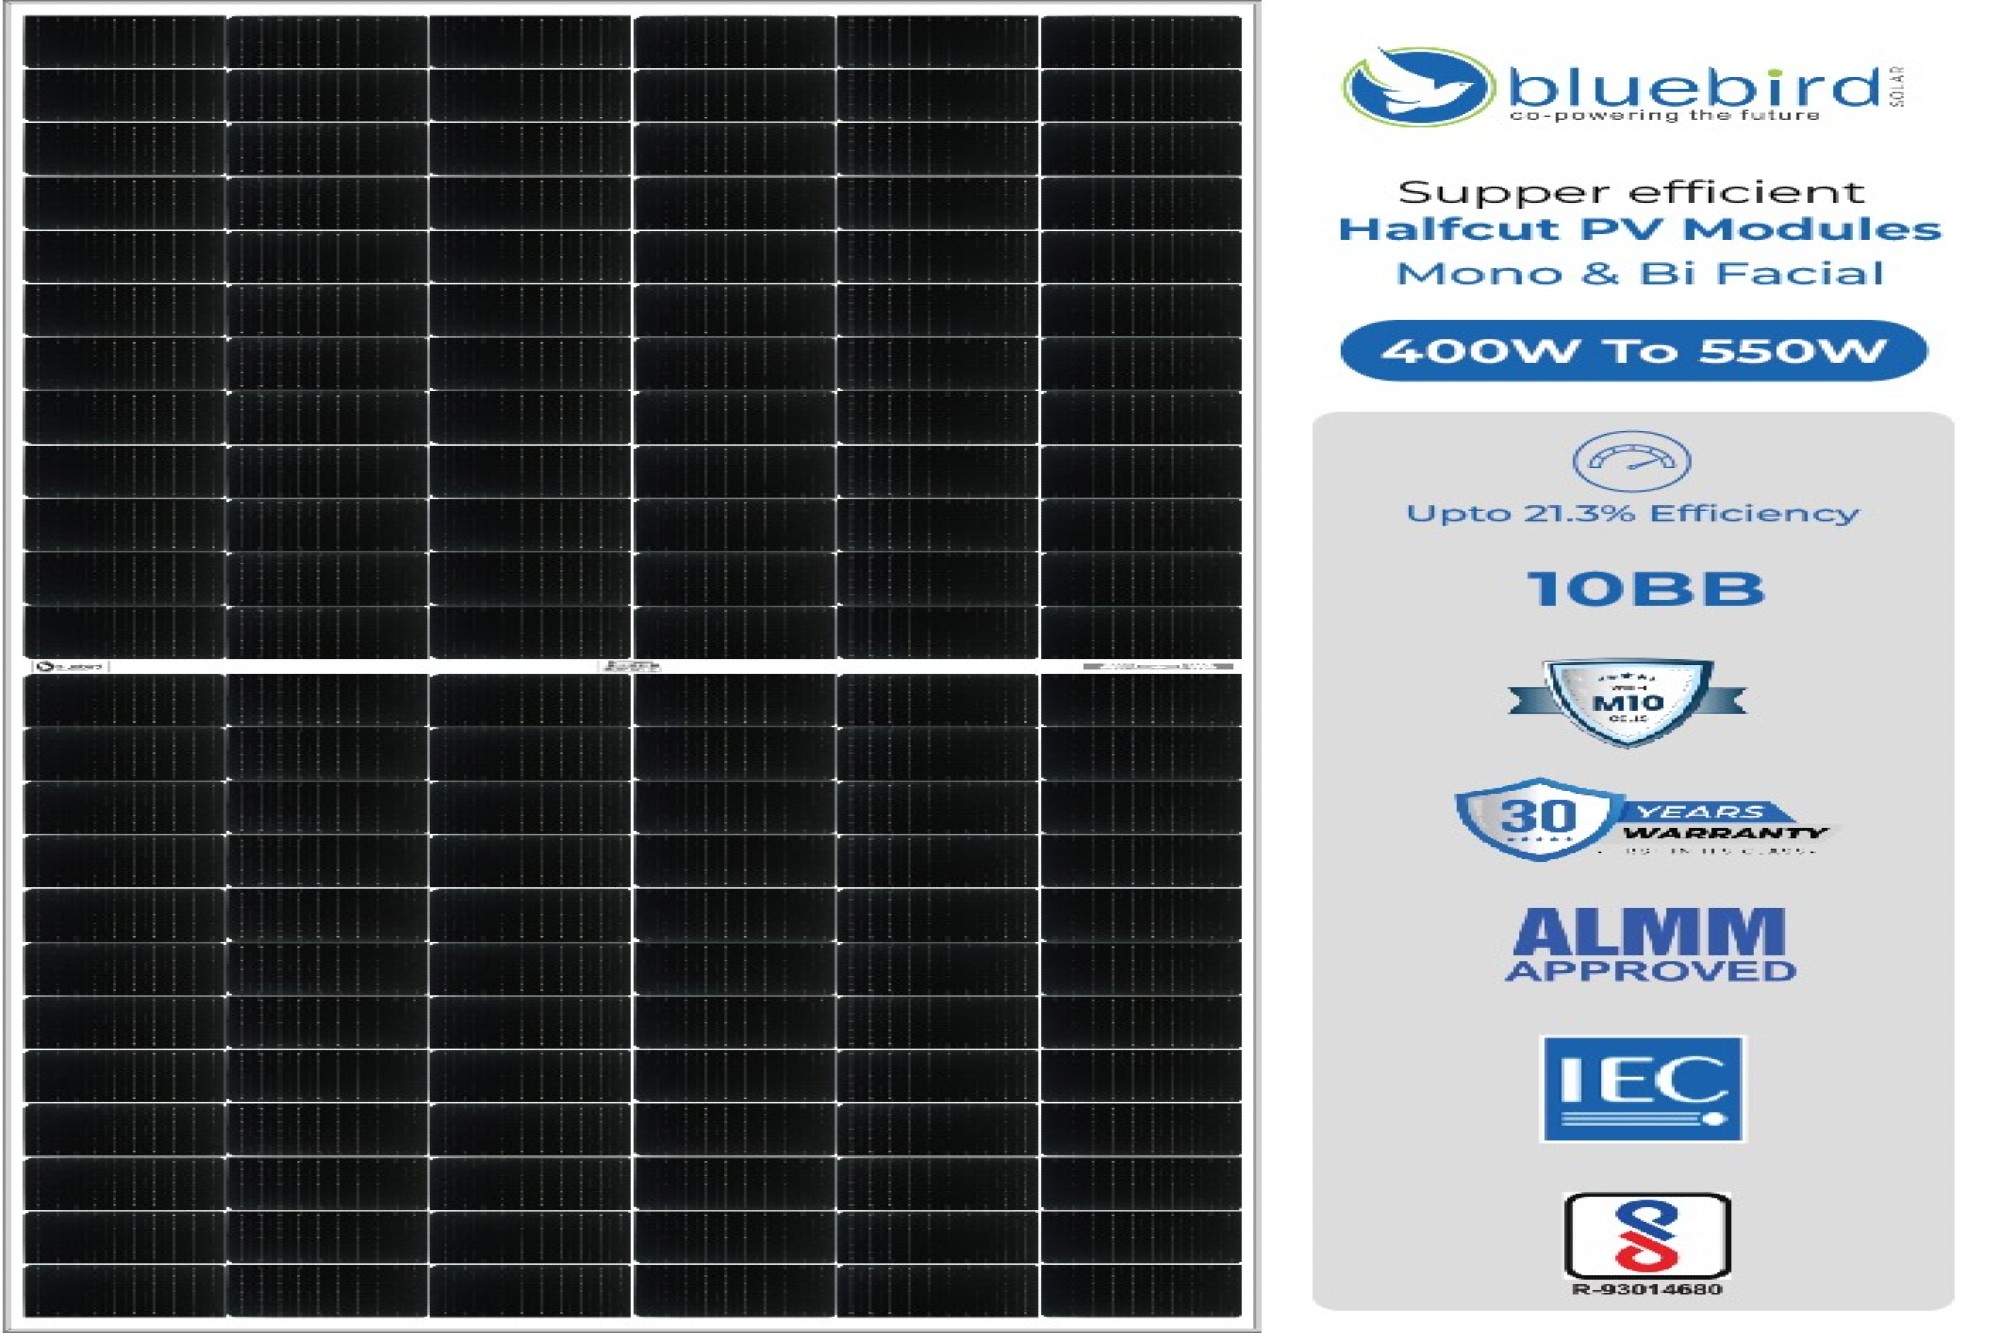 Bluebird Solar introduces M10 half-cut PV modules